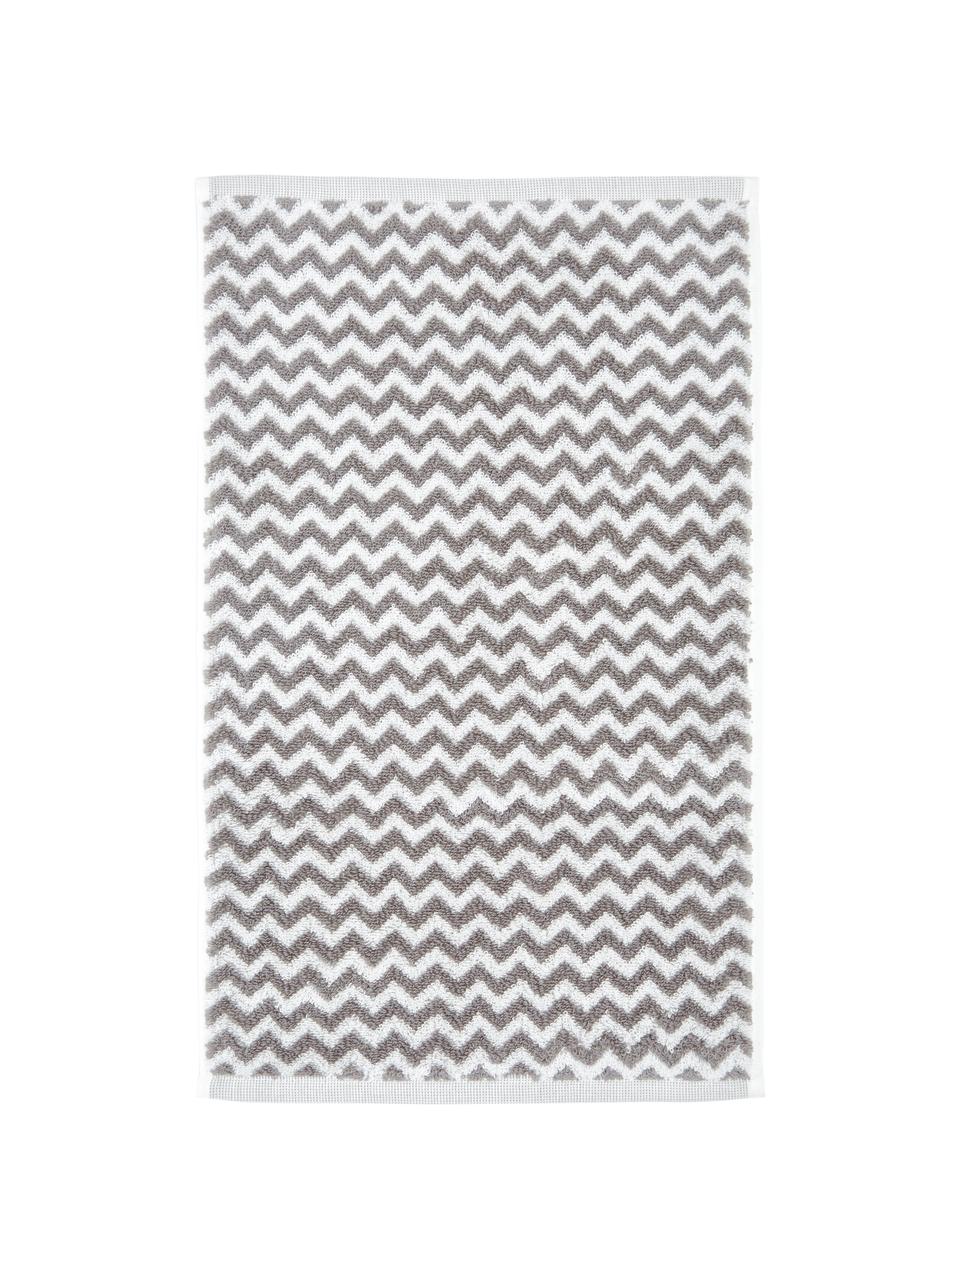 Handtücher Liv mit Zickzack-Muster, 2 Stück, 100% Baumwolle, mittelschwere Qualität 550 g/m², Taupe, Weiß, Gästehandtuch, B 30 x L 50 cm, 2 Stück